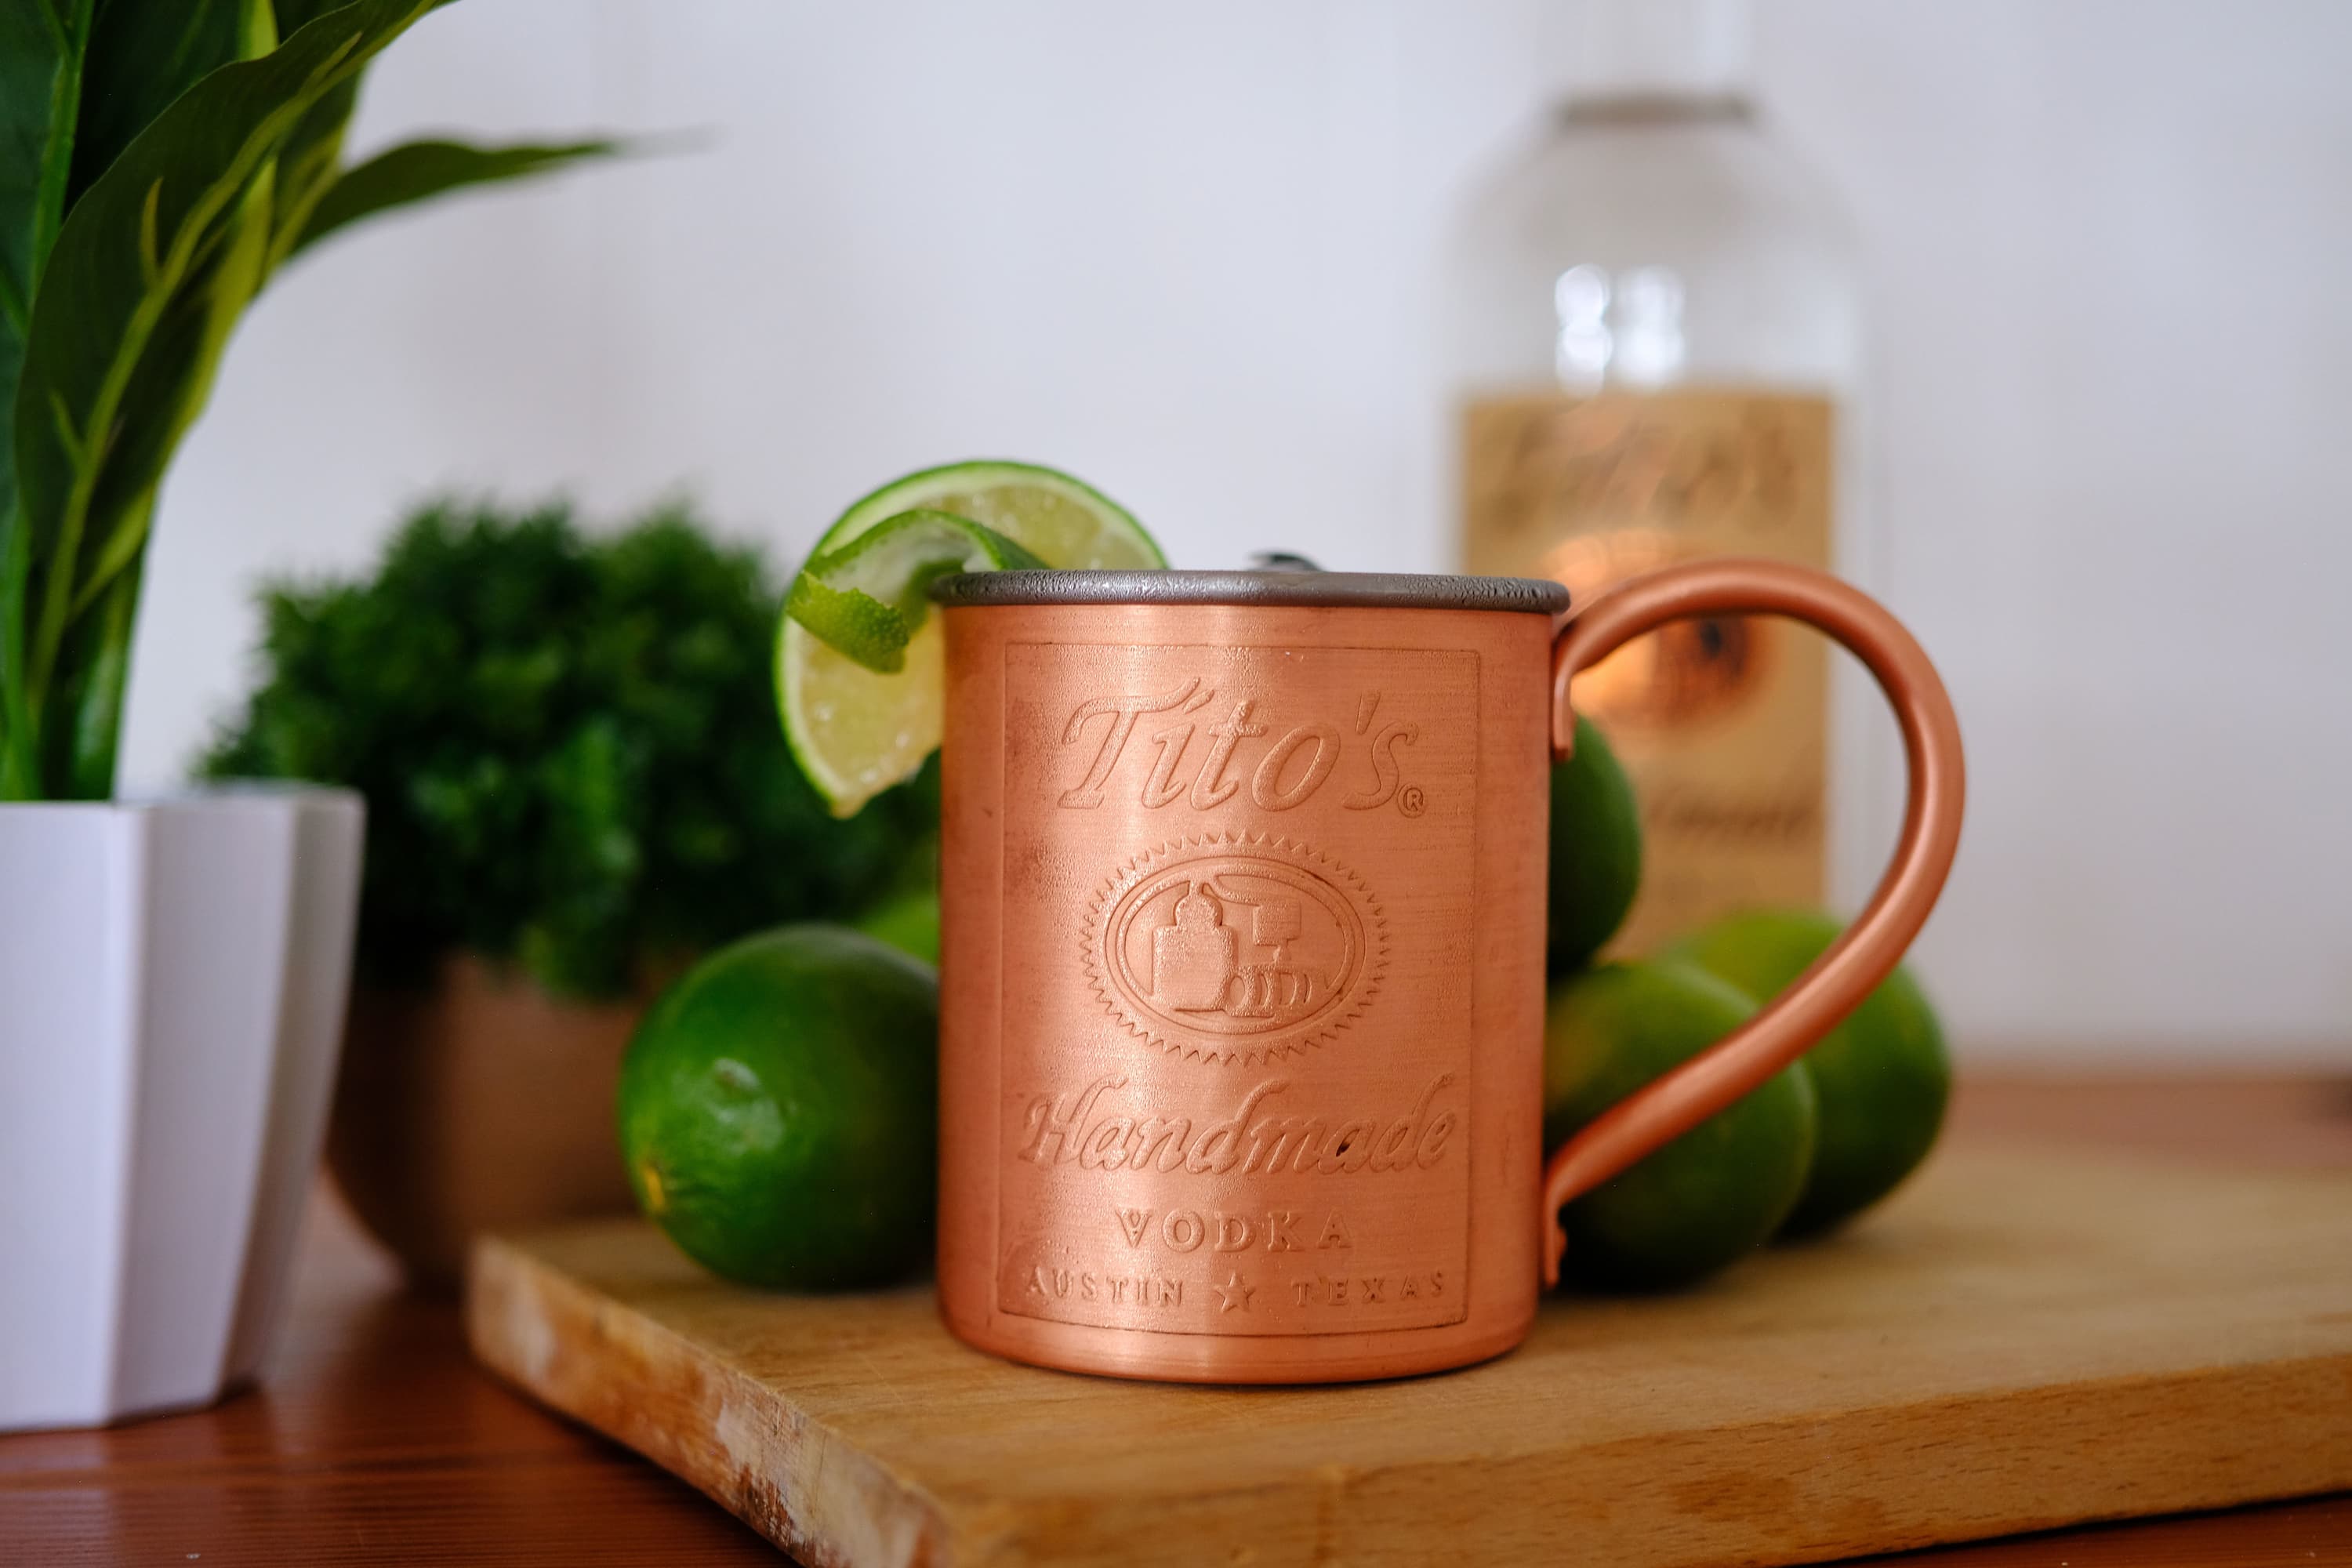 Tito's American Mule in a Copper Mug